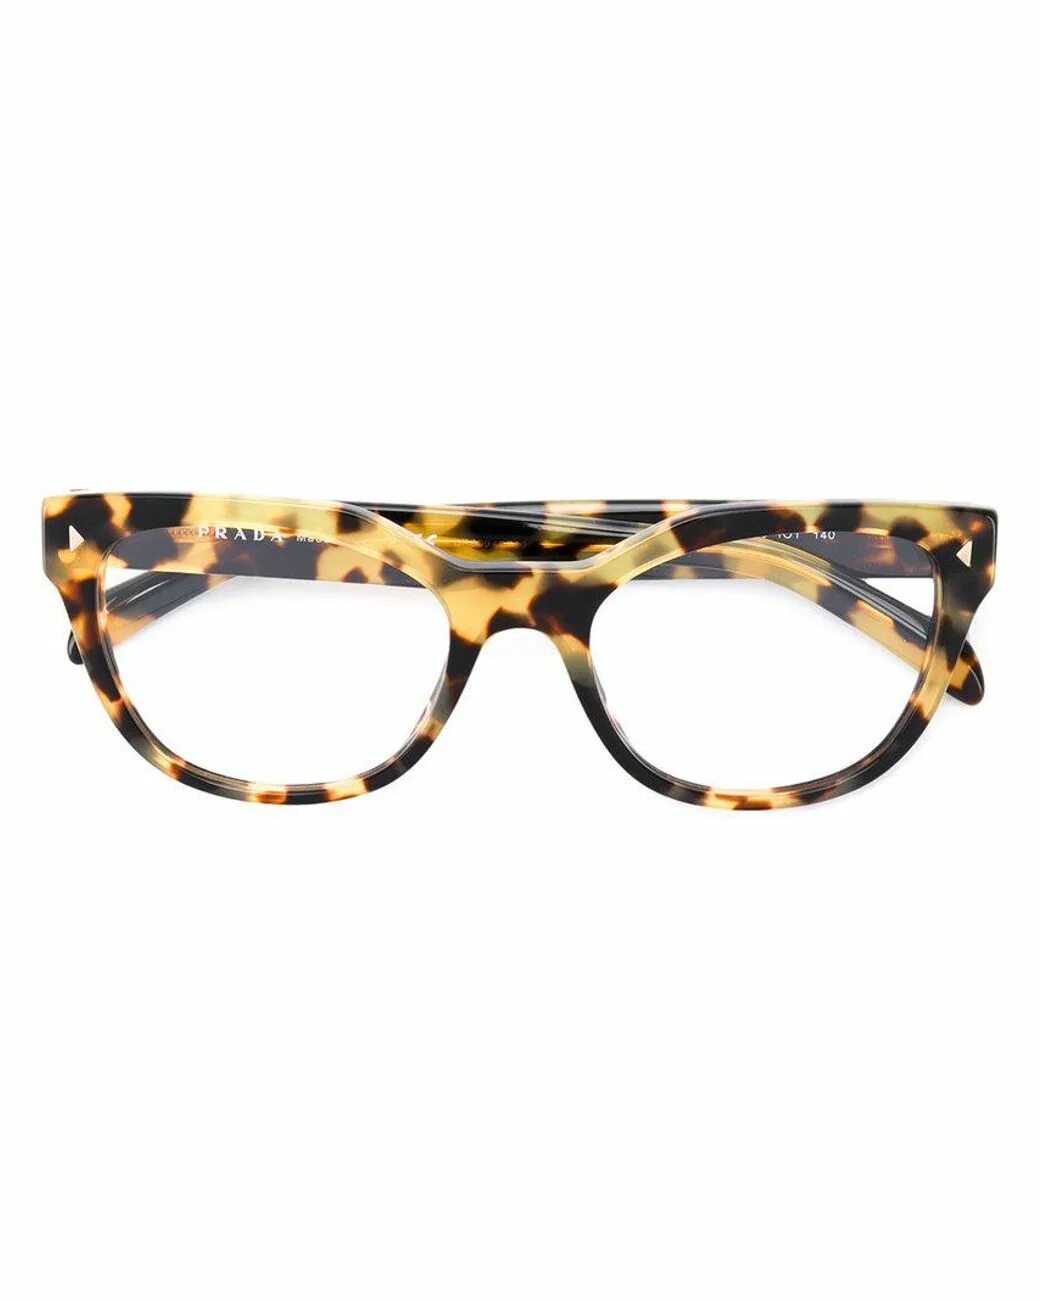 Очки Прада леопардовые. Солнцезащитные очки леопардовые Prada. Очки Прада леопардовые женские. Prada леопард очки.